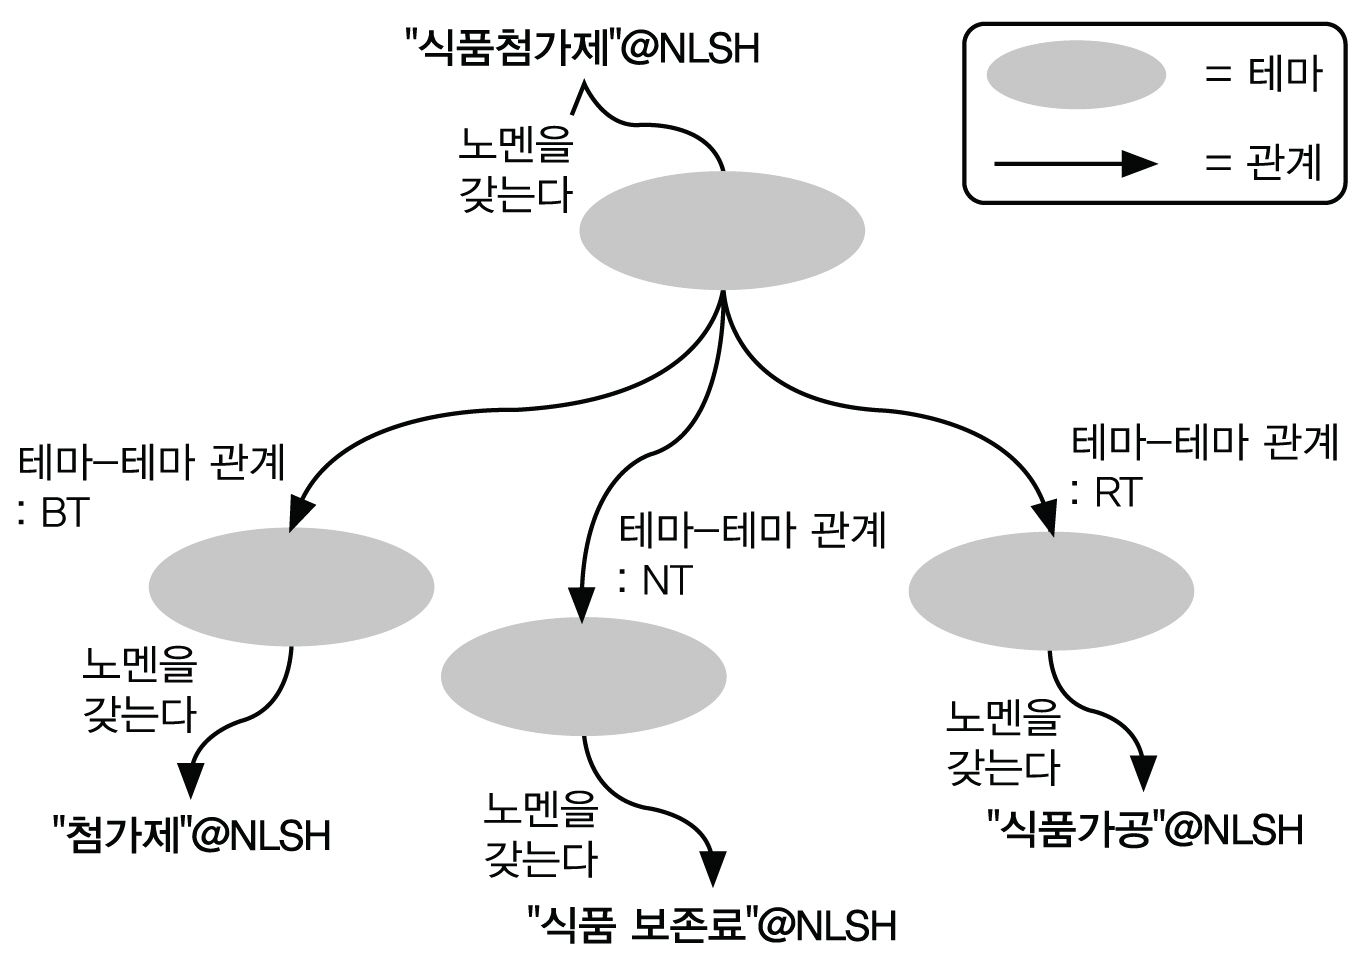 NLSH 계층 및 연관관계와 테마-테마 관계의 비교